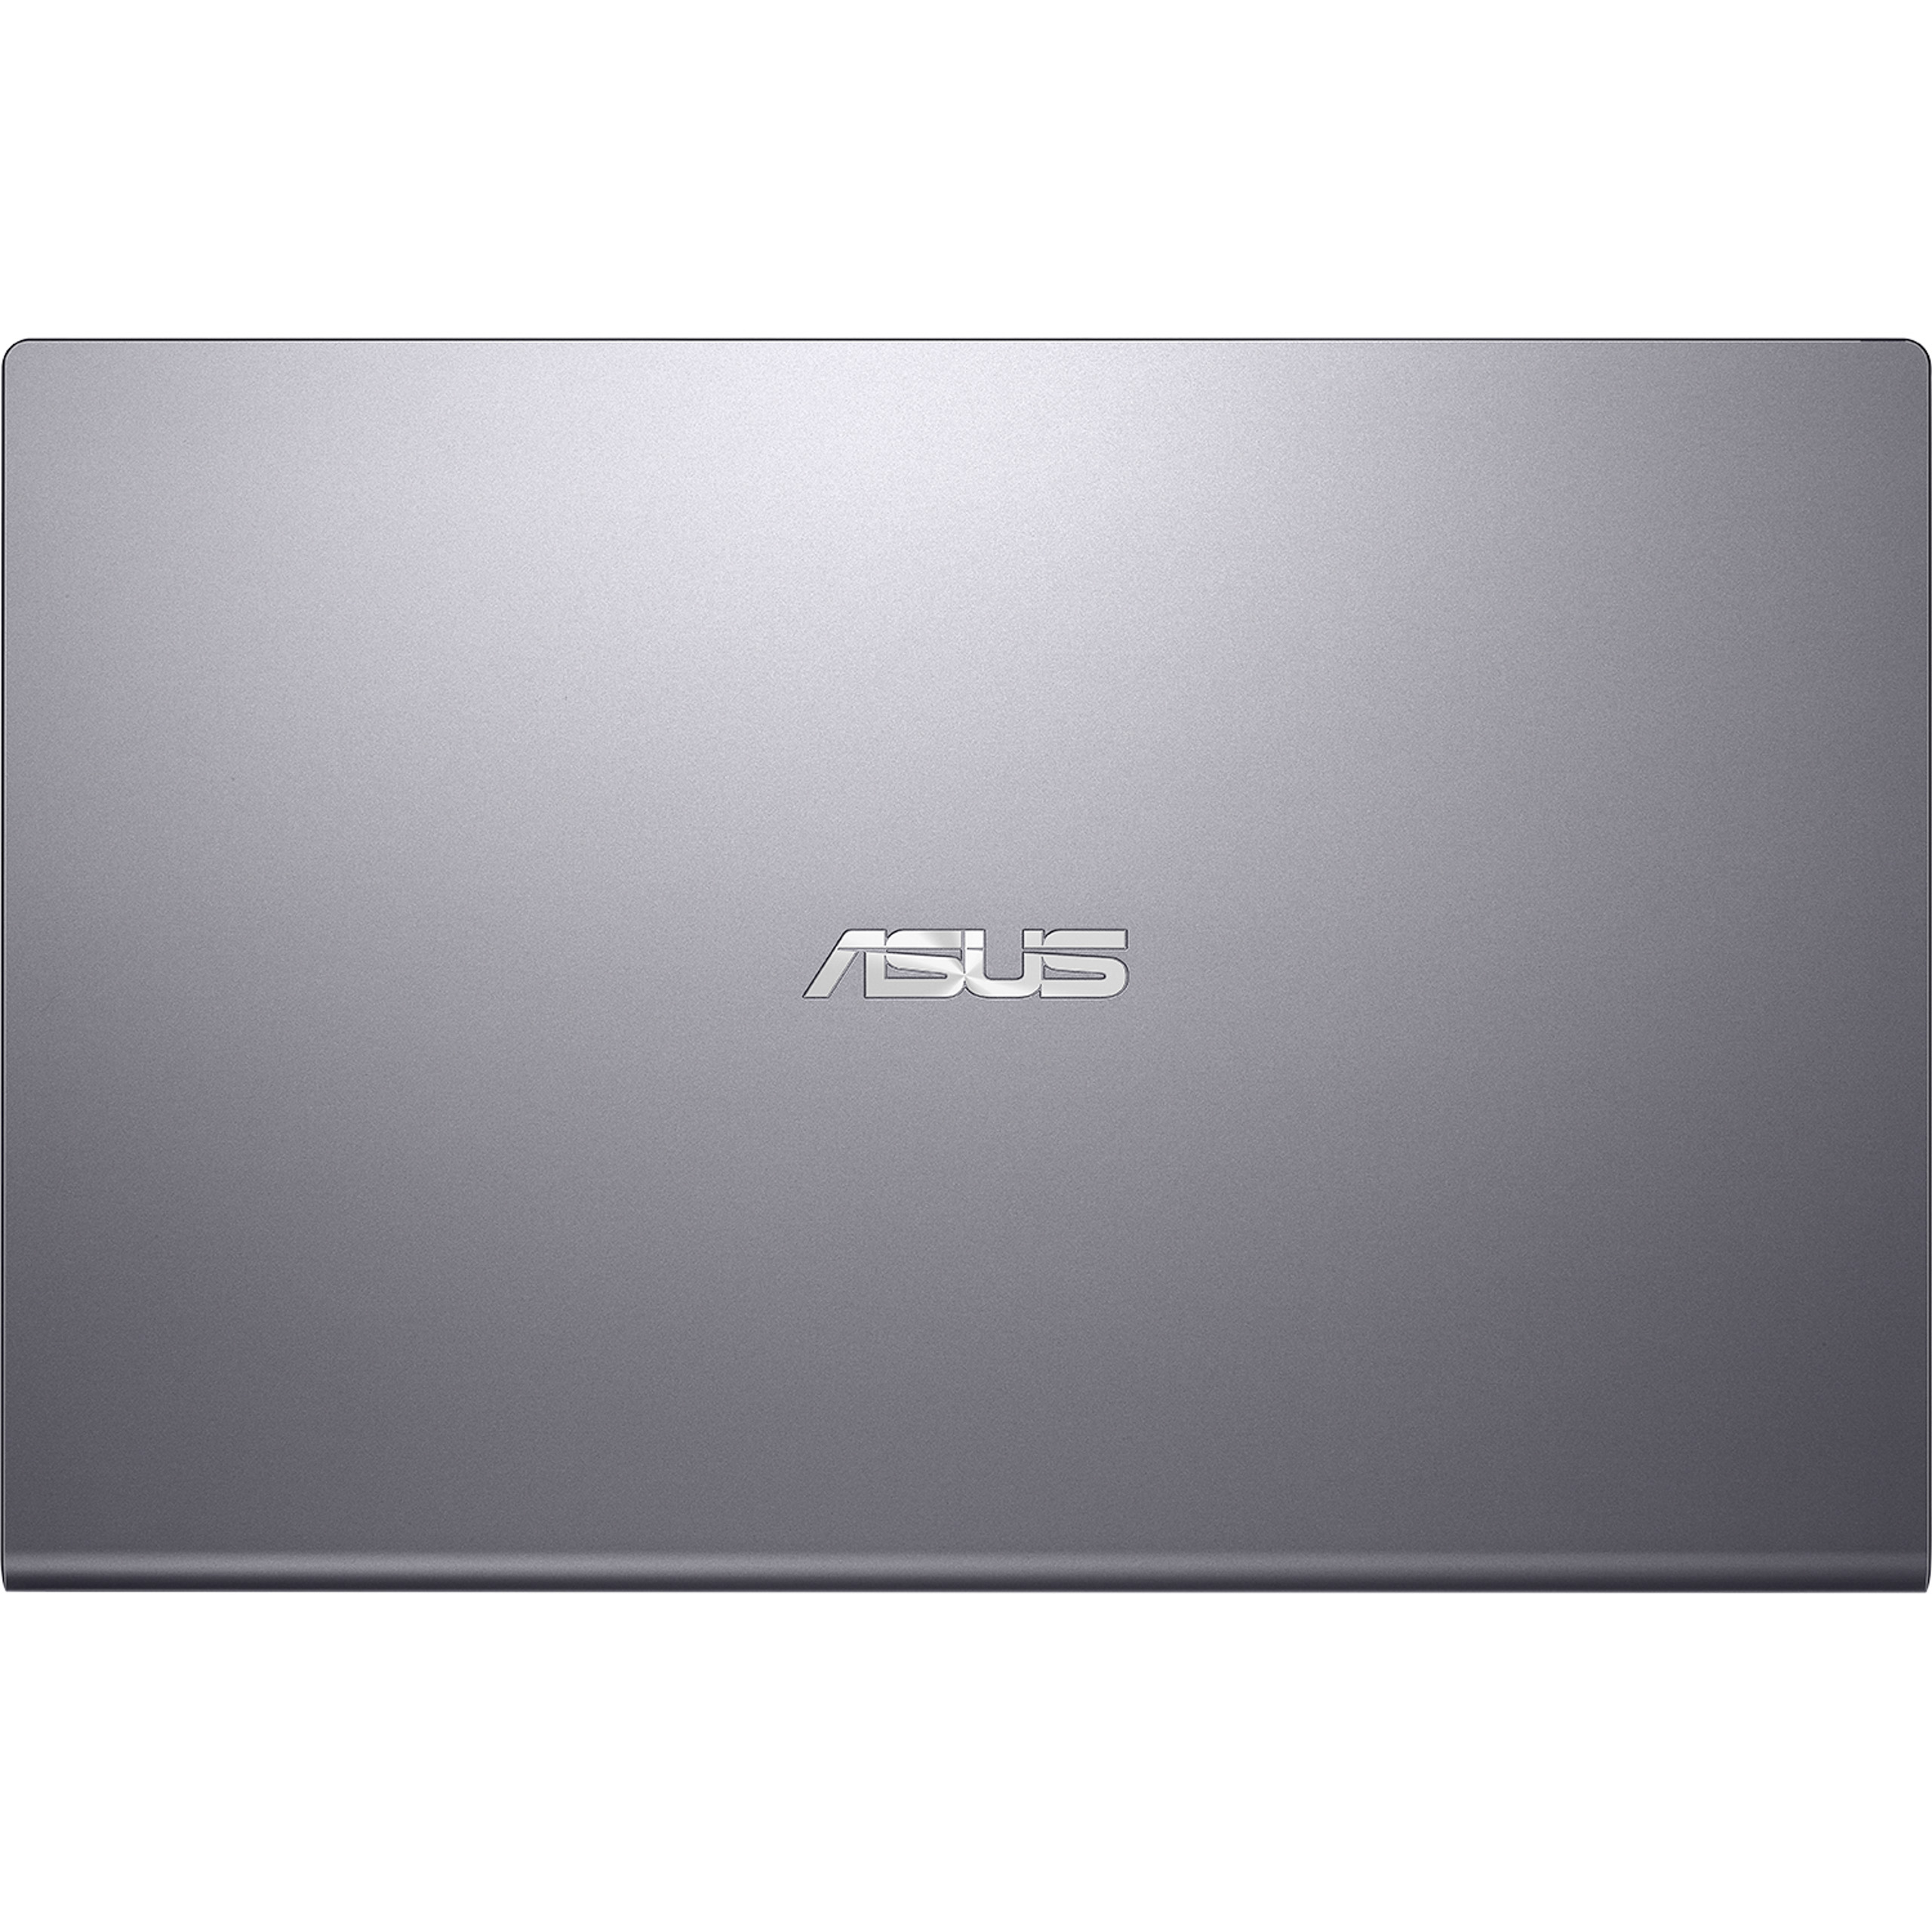 ASUS giới thiệu laptop X409 và X509: nhỏ gọn trong phân khúc, viền mỏng và SSD 512GB